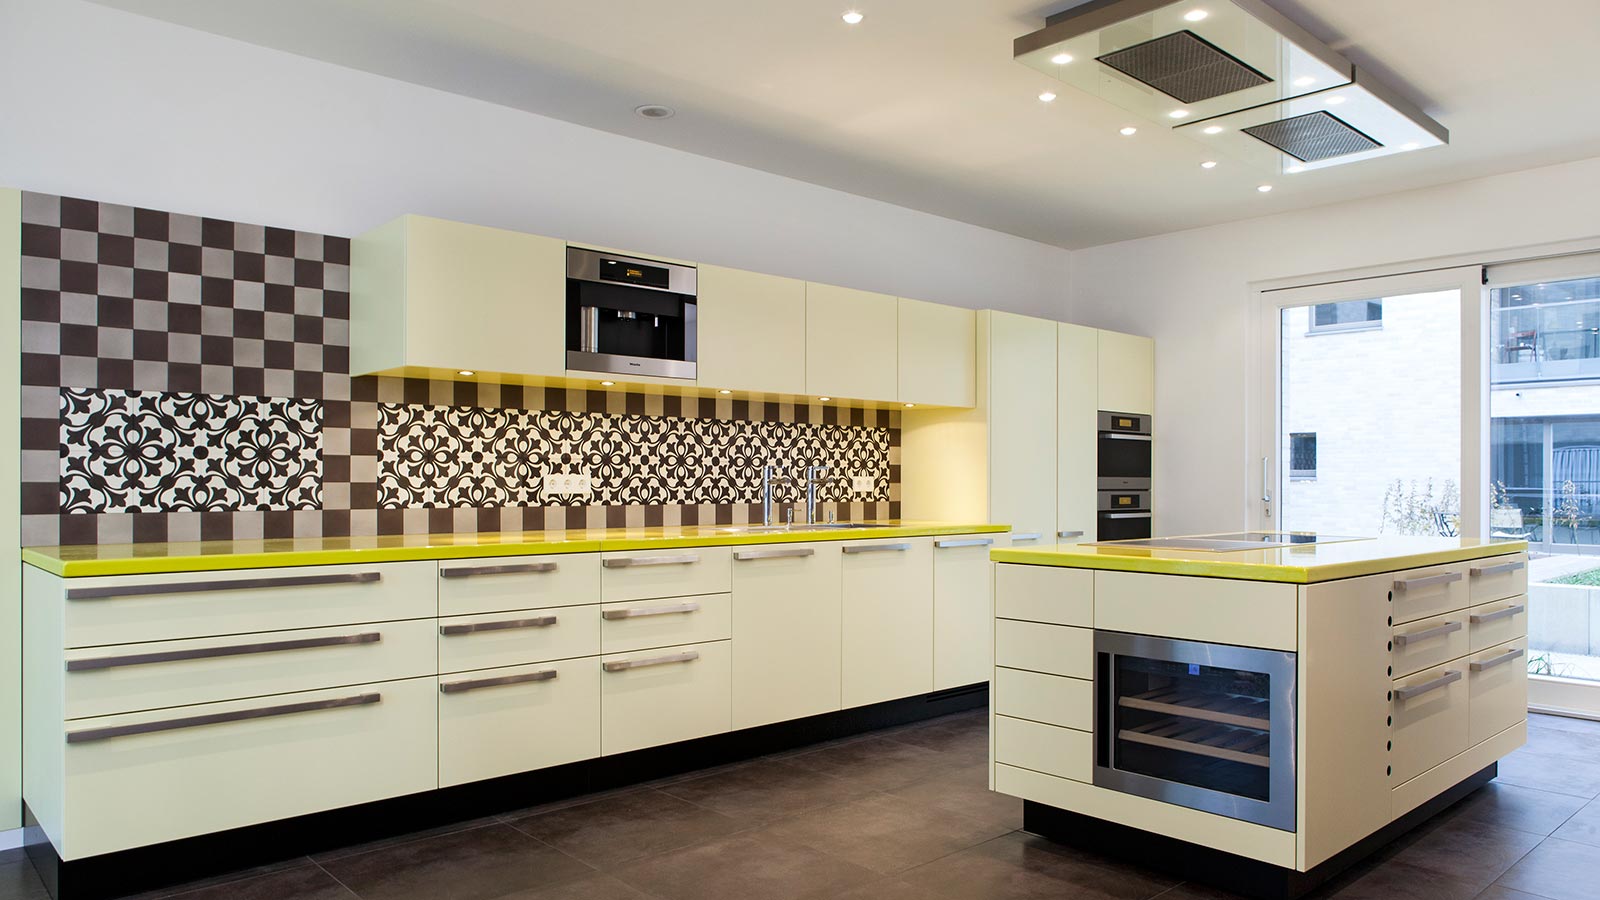 Diese originelle, von uns entworfene Küche mit emaillierter gelber Basalt Arbeitsplatte und Zementfliesen an der Rückwand hat einen Mittelblock mit Induktionskochfeld und Teppanyaki sowie einem Weinkühlschrank